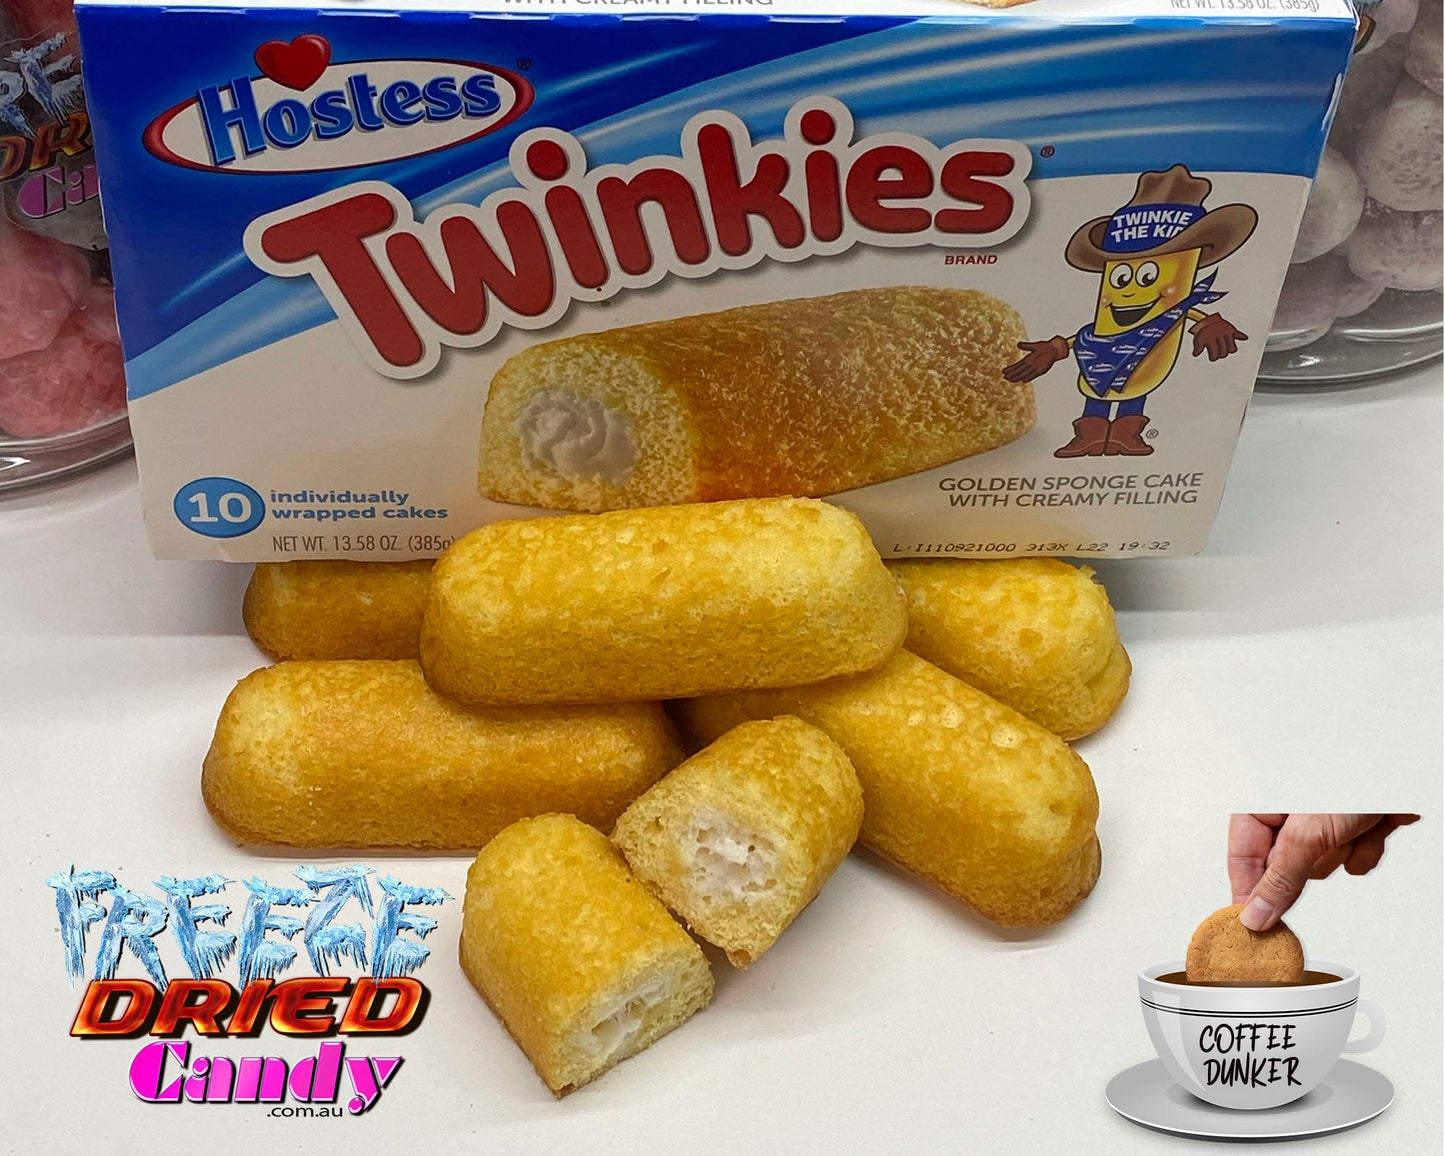 Freeze Dried Twinkie - Freeze Dried Candy Lollies & Treats